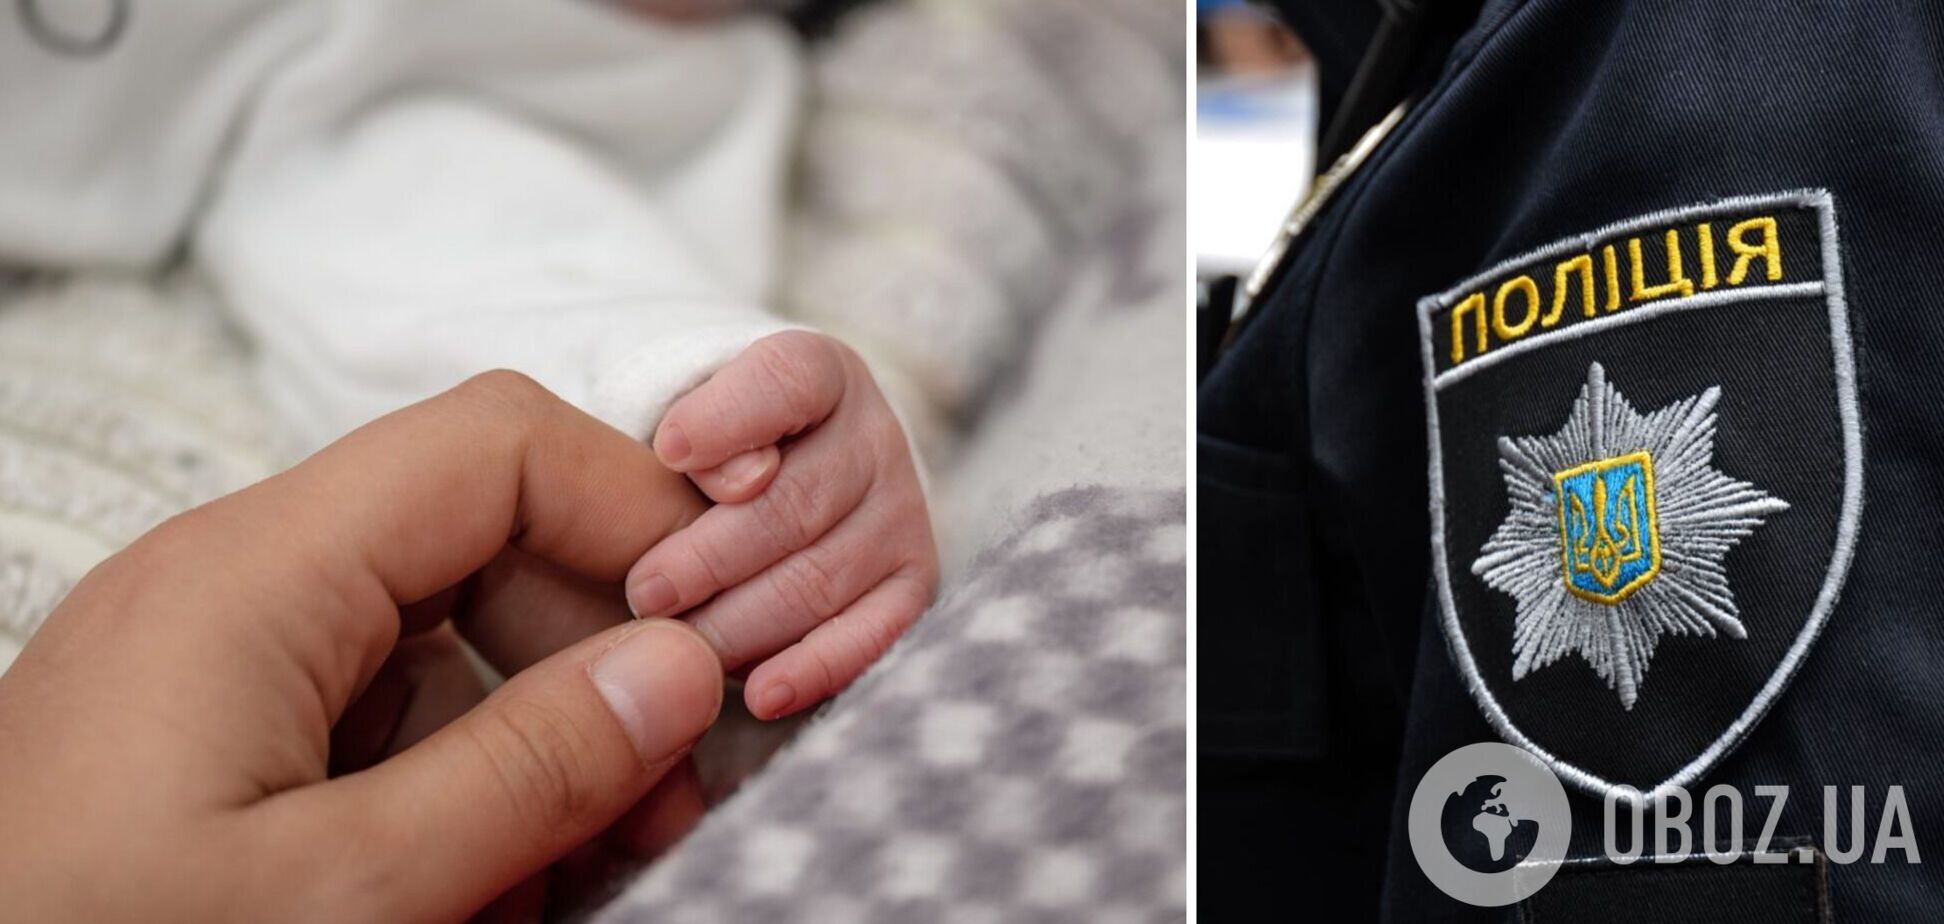 На Закарпатті знайшли новонароджену дитину на звалищі: історія порятунку виявилася фейком. Фото